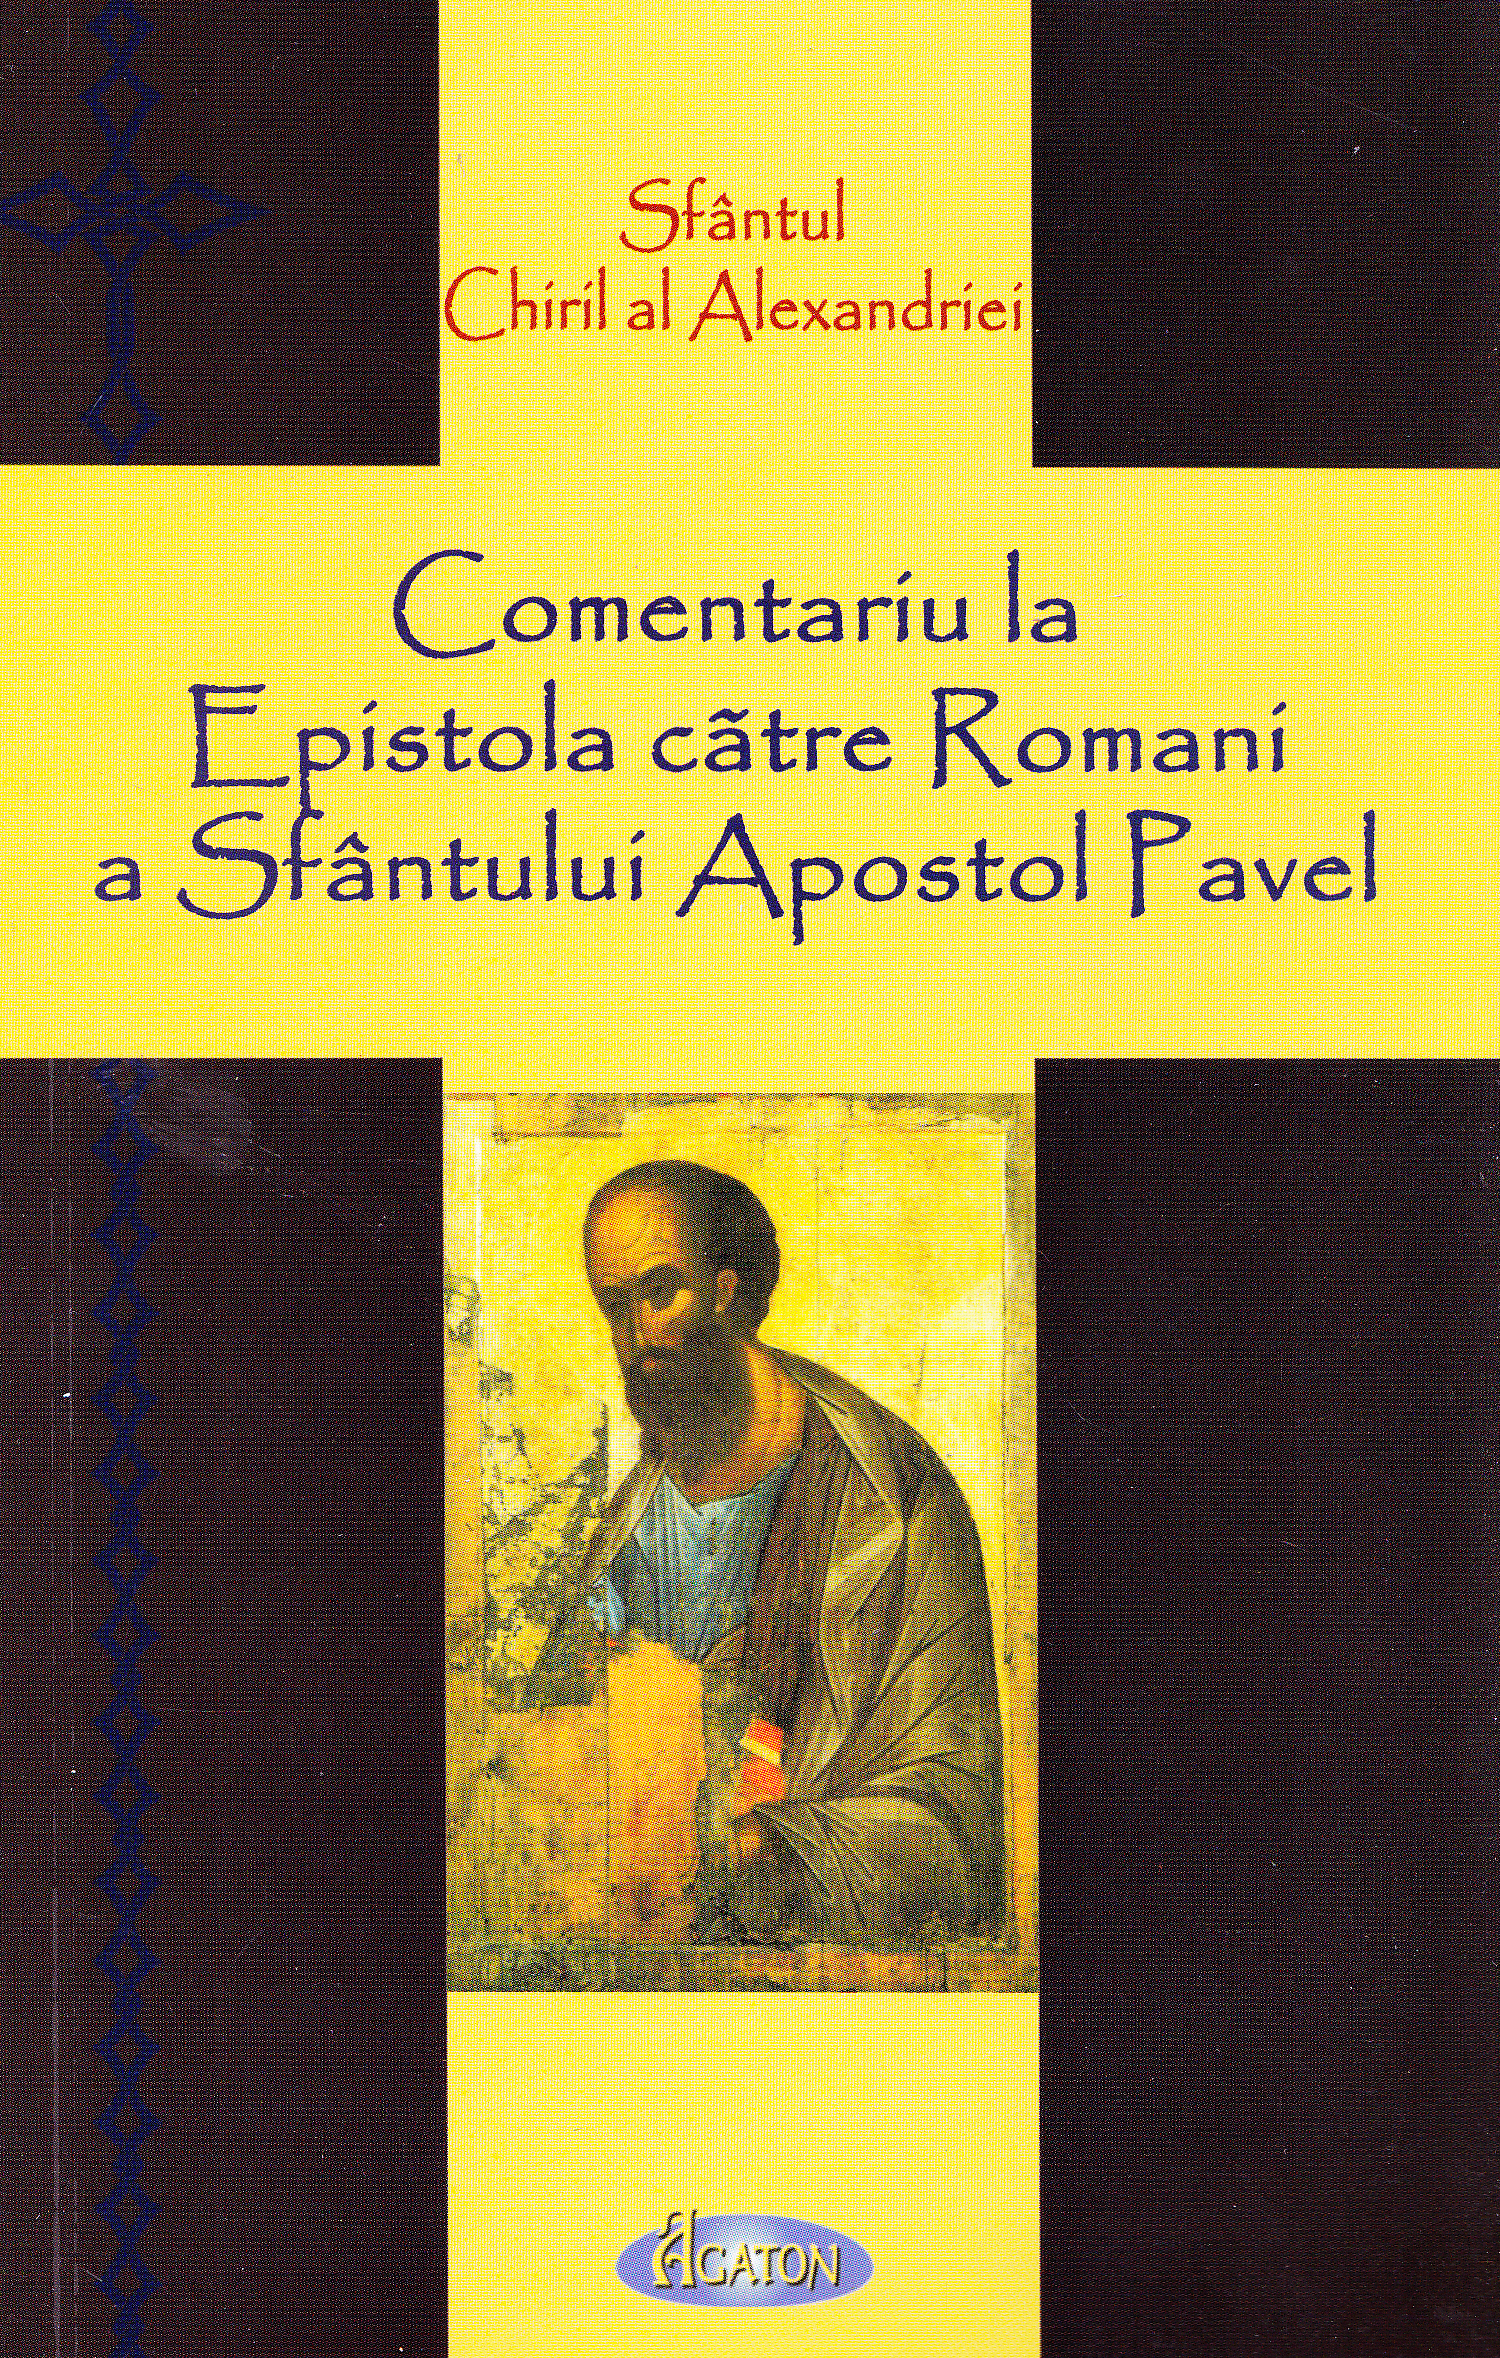 Comentariu la Epistola catre Romani a Sfantului Apostol Pavel - Sfantul Chiril al Alexandriei